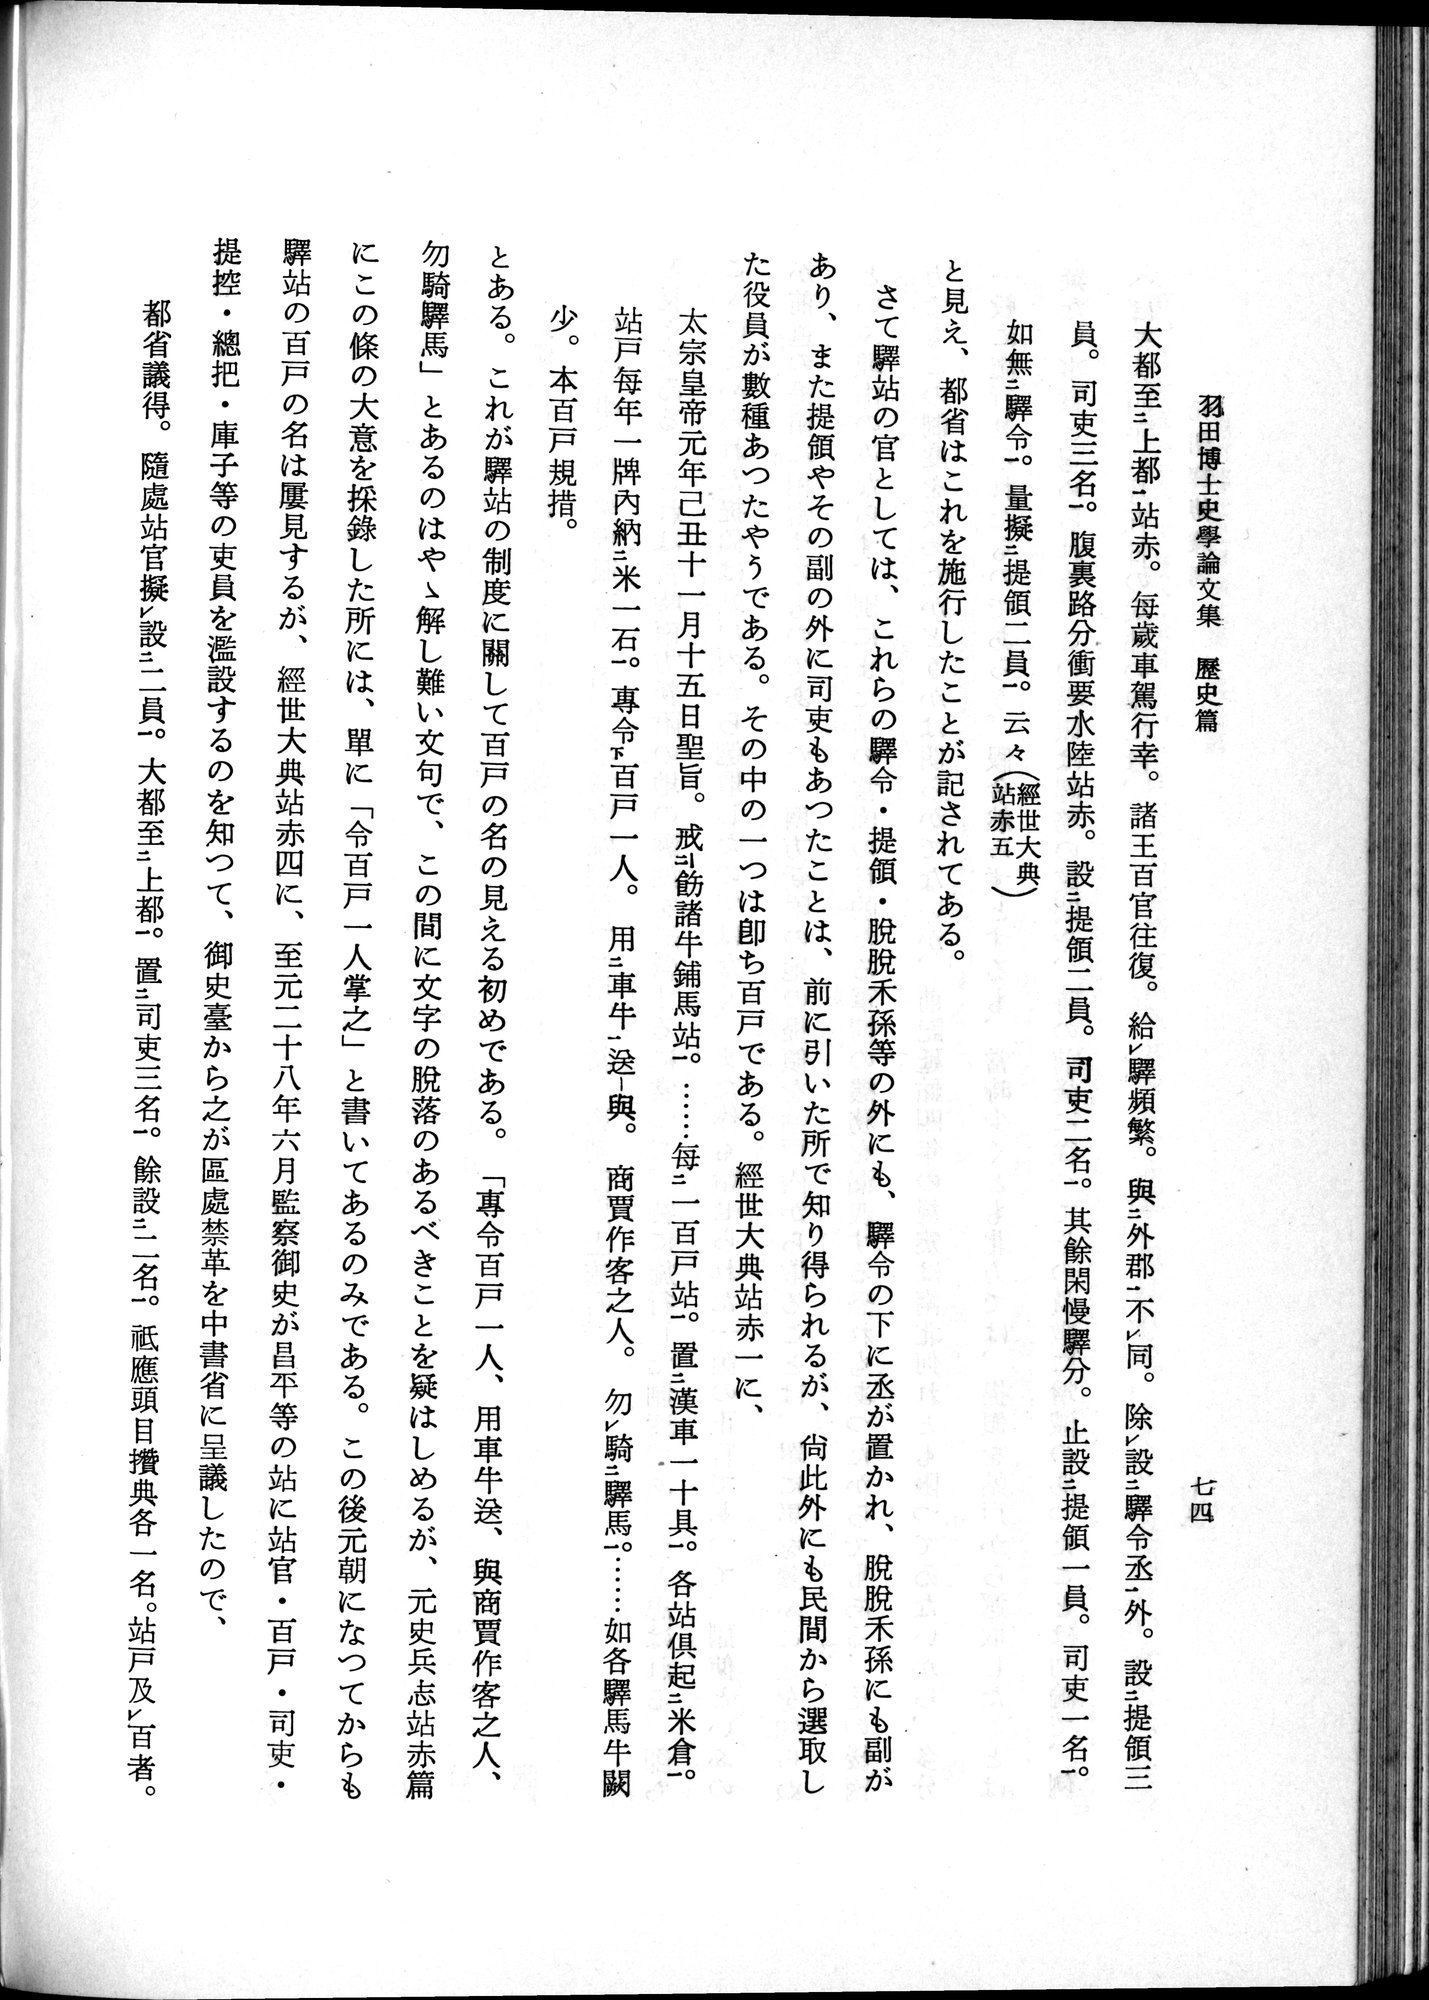 羽田博士史学論文集 : vol.1 / Page 112 (Grayscale High Resolution Image)